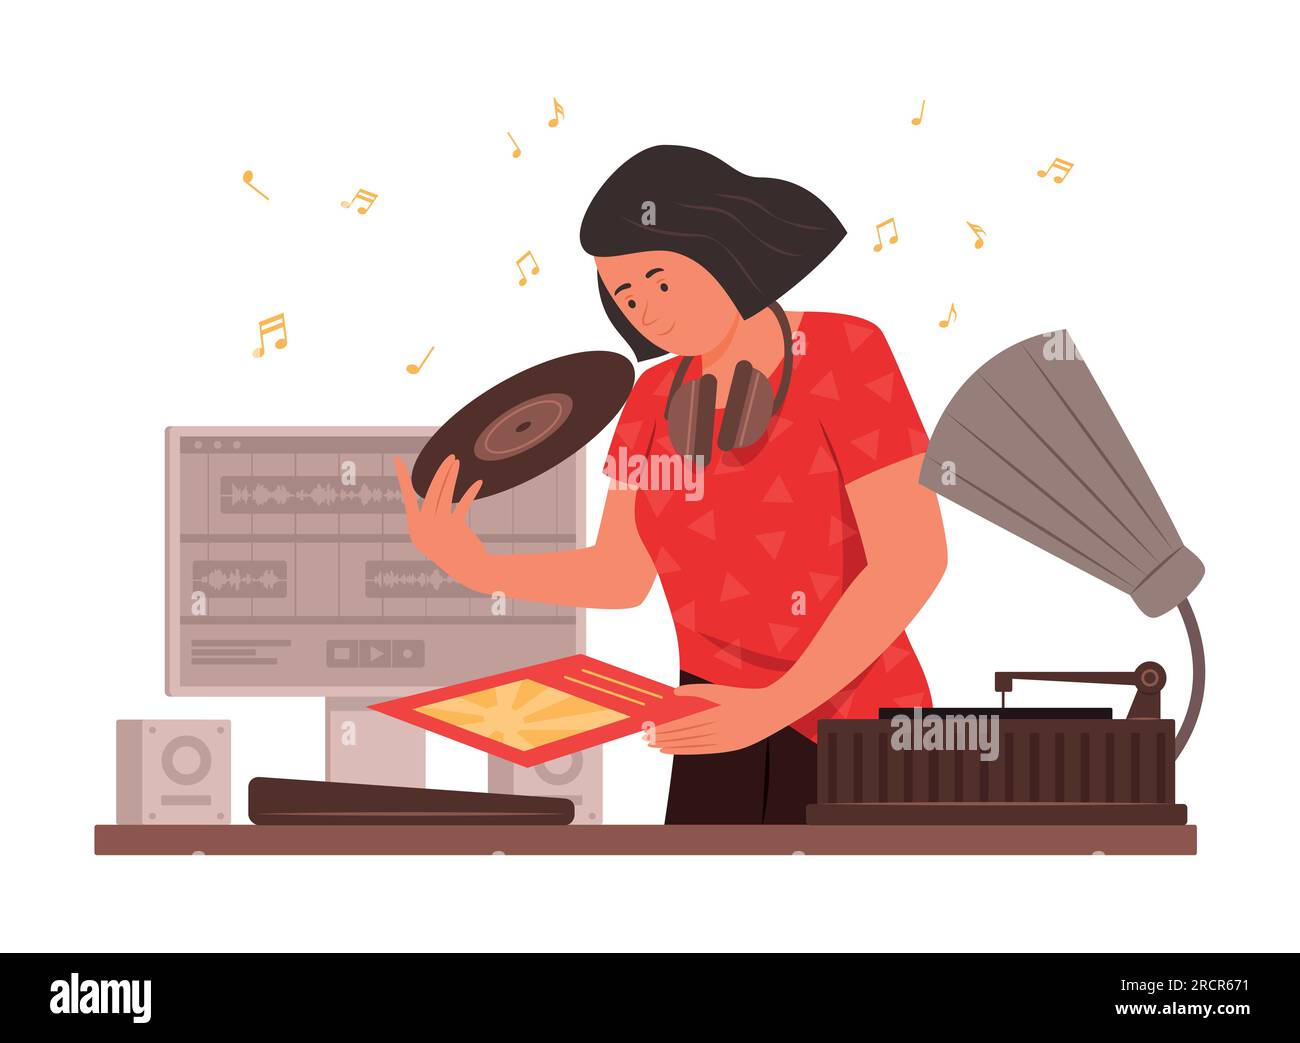 DJ Woman che mixa musica con Vinyl Records Disc e record audio Sounds Concept Illustration Illustrazione Vettoriale